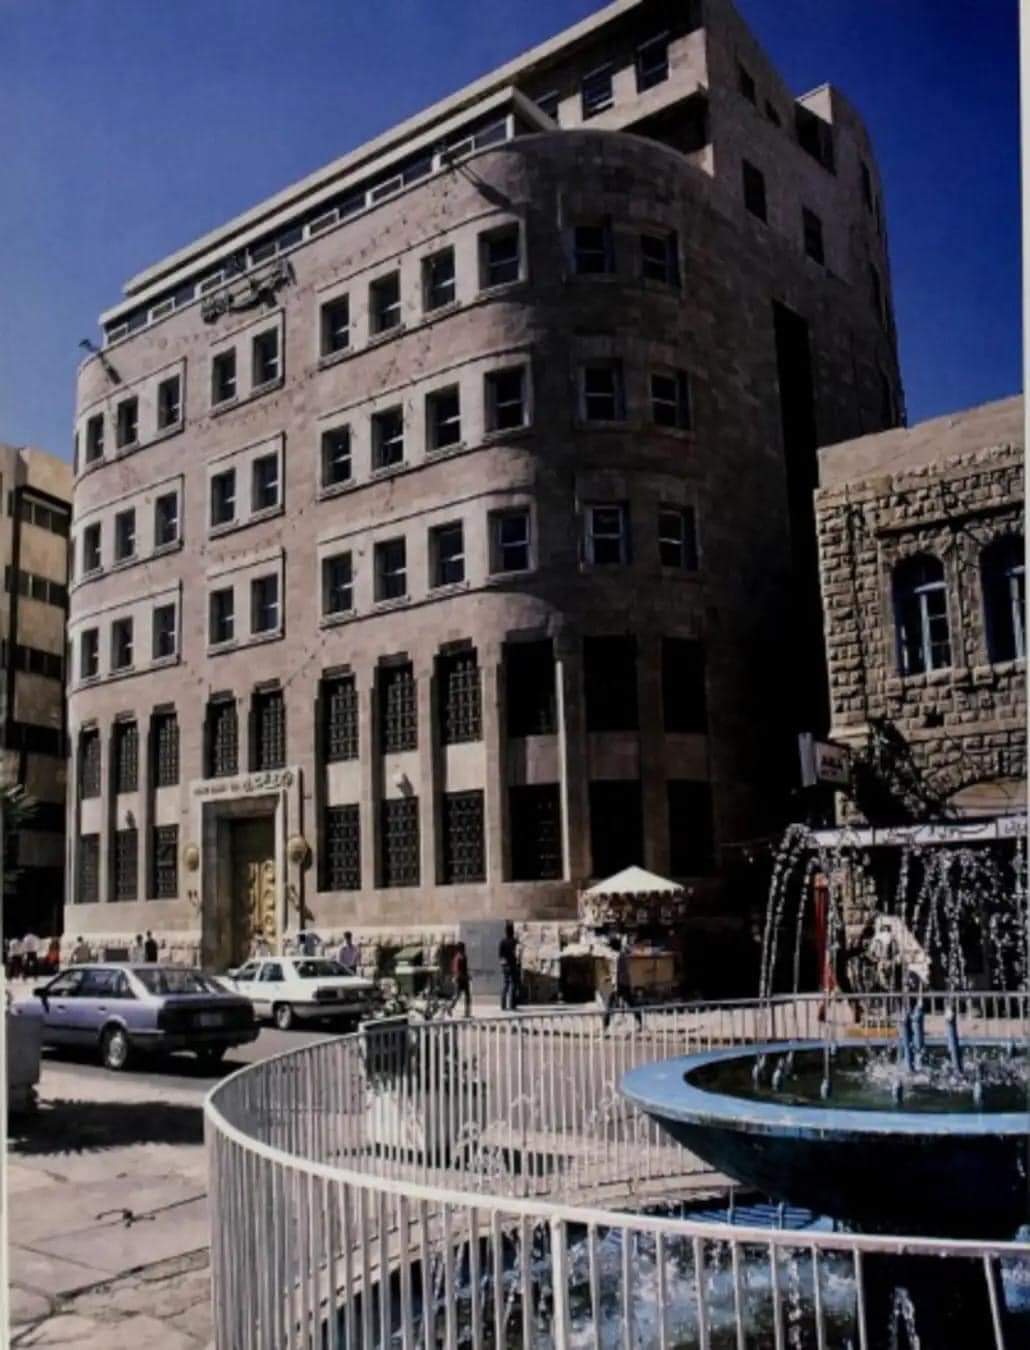 البنك العربي في شارع الملك فيصل في العاصمة عمان ...افتتح فرعه في  عام 1934